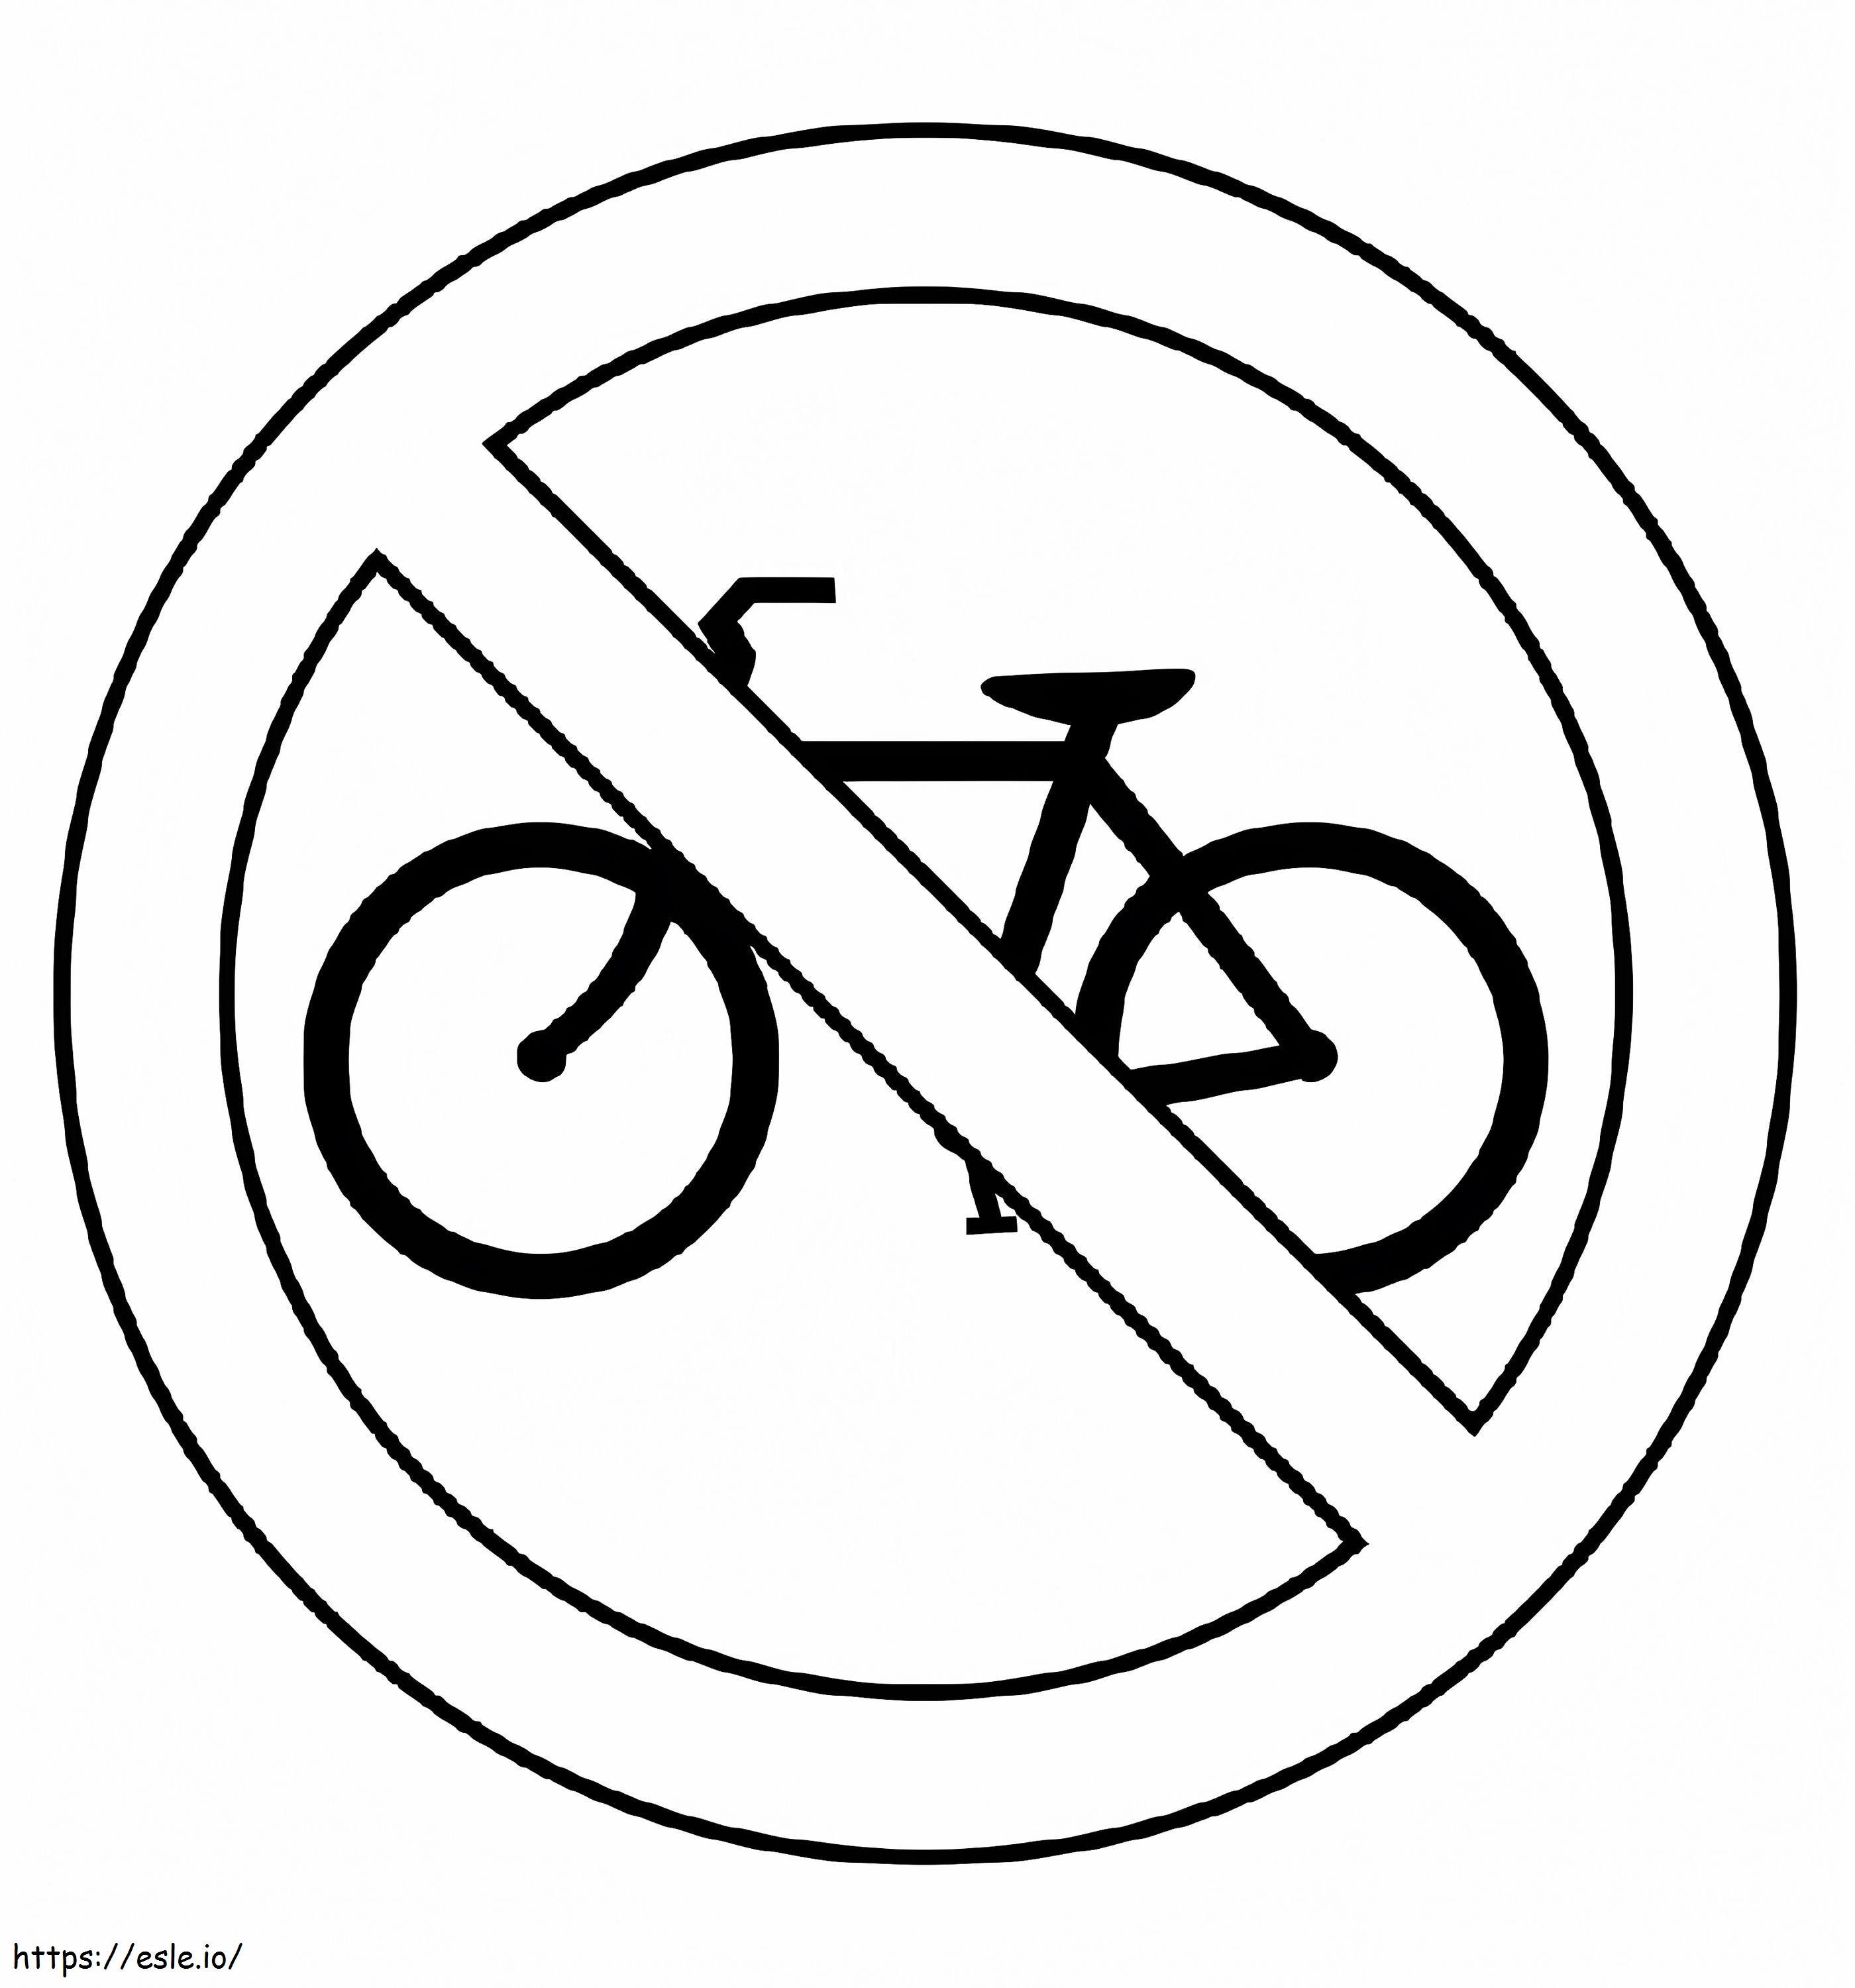 Nenhum sinal de trânsito de bicicleta para colorir